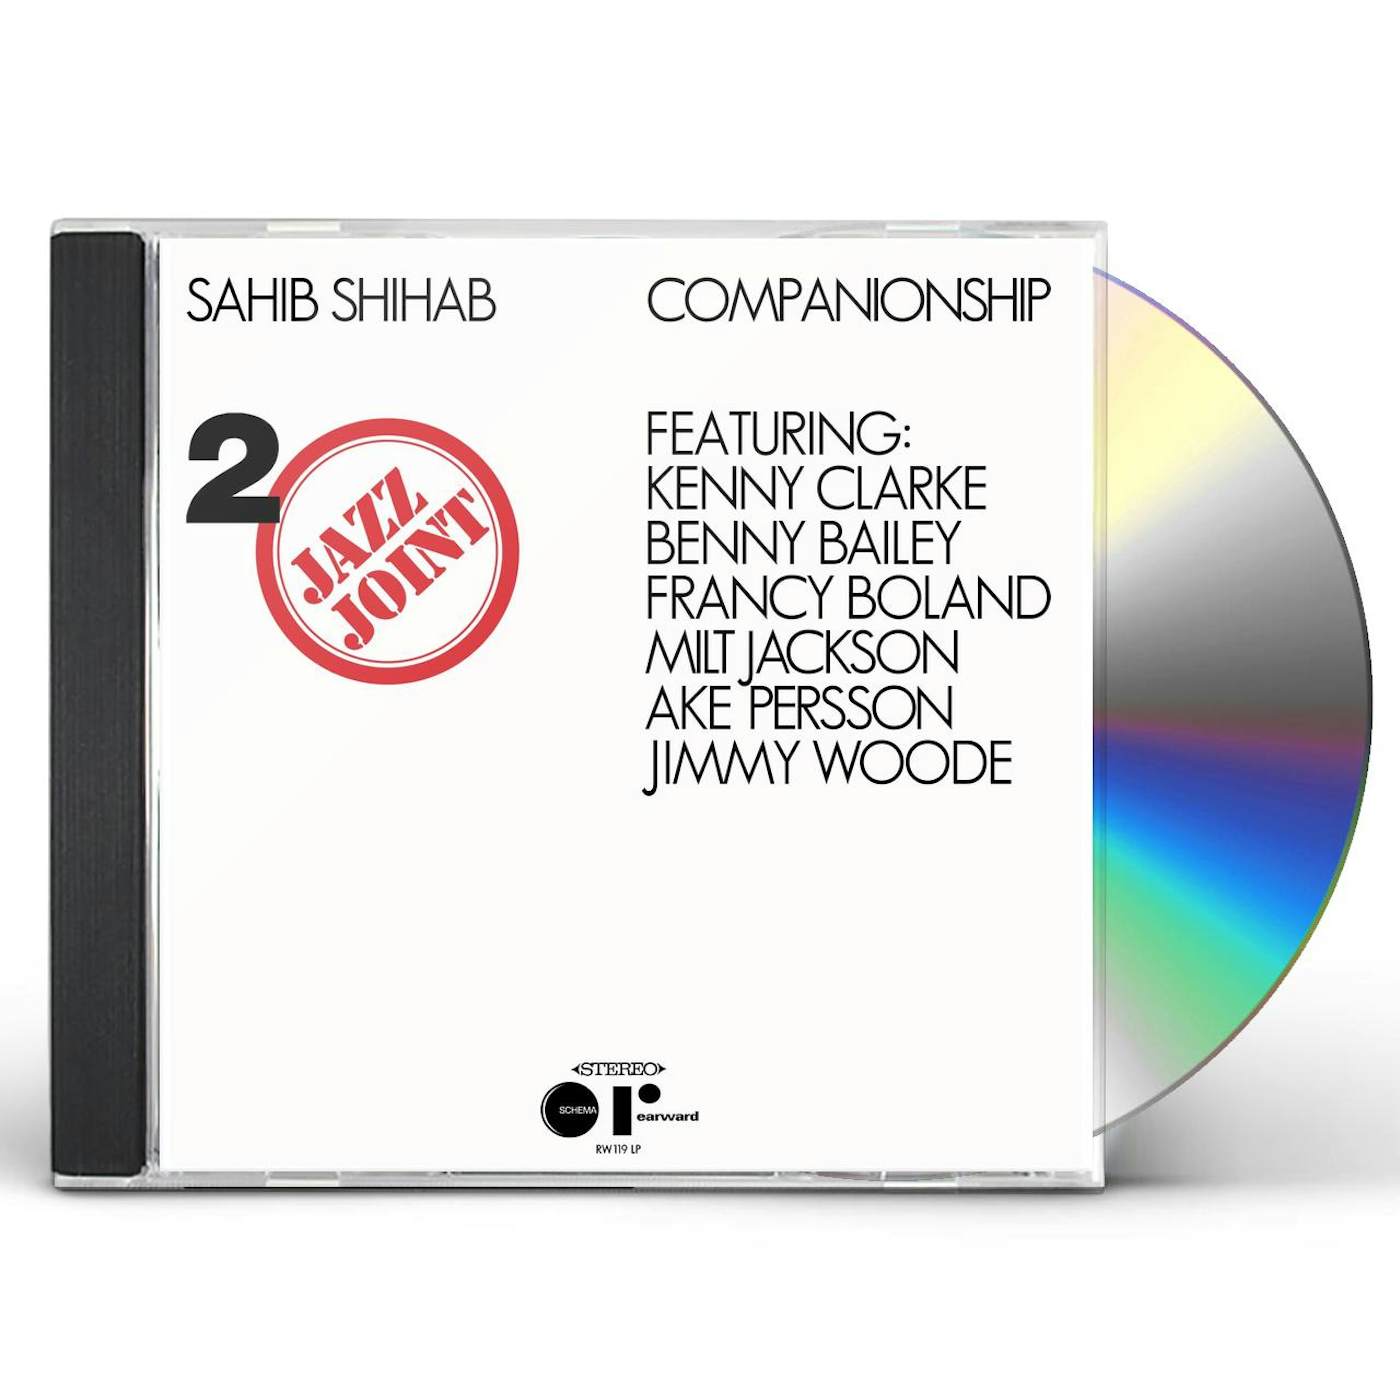 Sahib Shihab COMPANIONSHIP CD